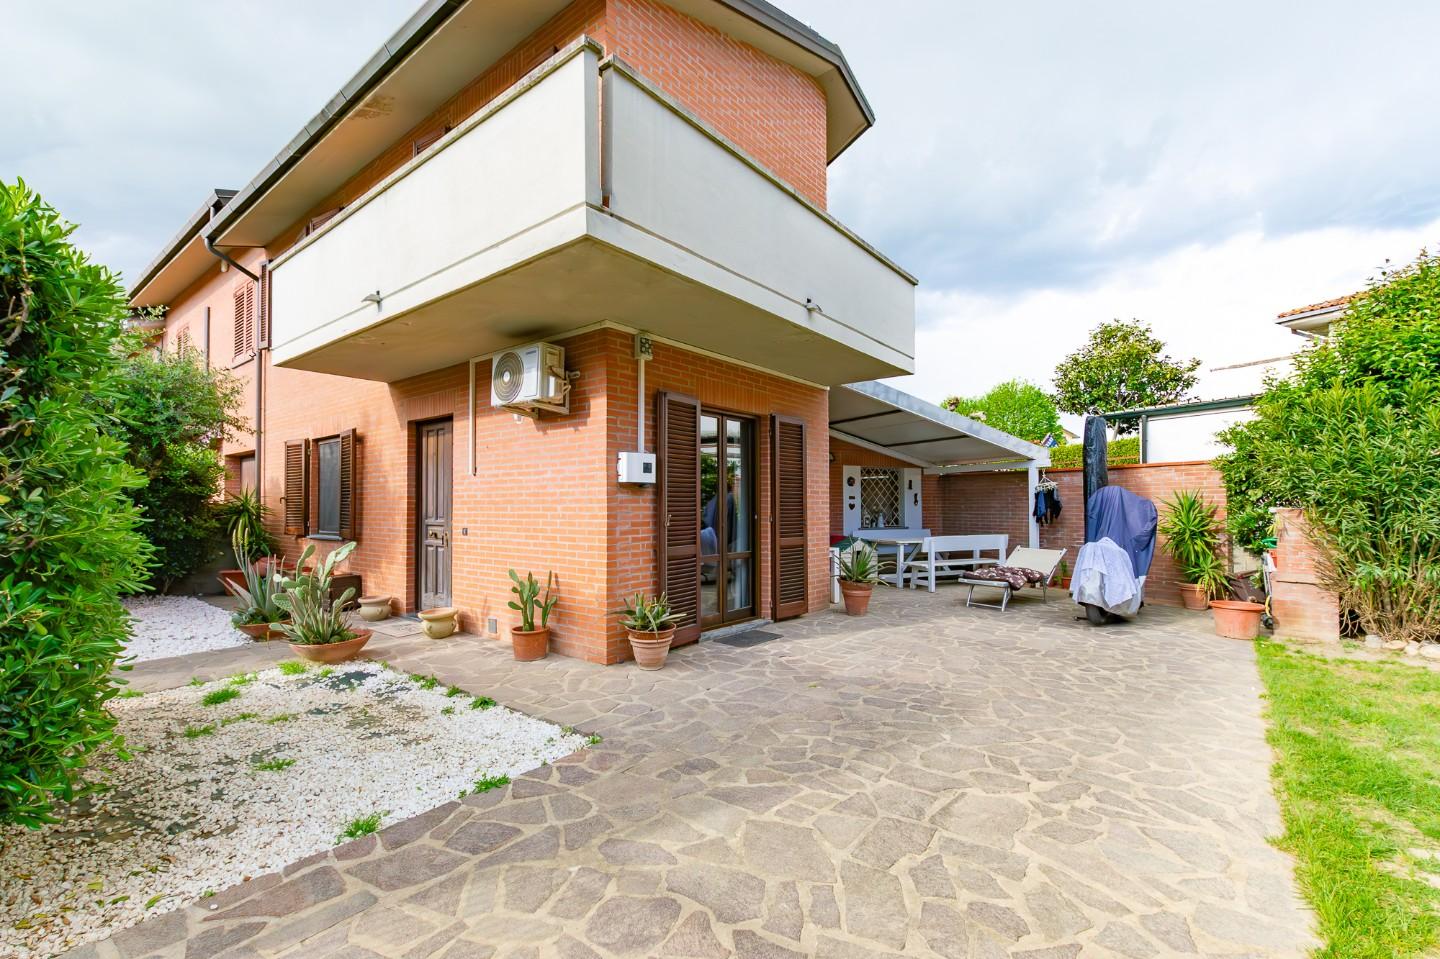 Villetta a schiera angolare in vendita a Ponsacco | Agenzia Toscana Immobiliare